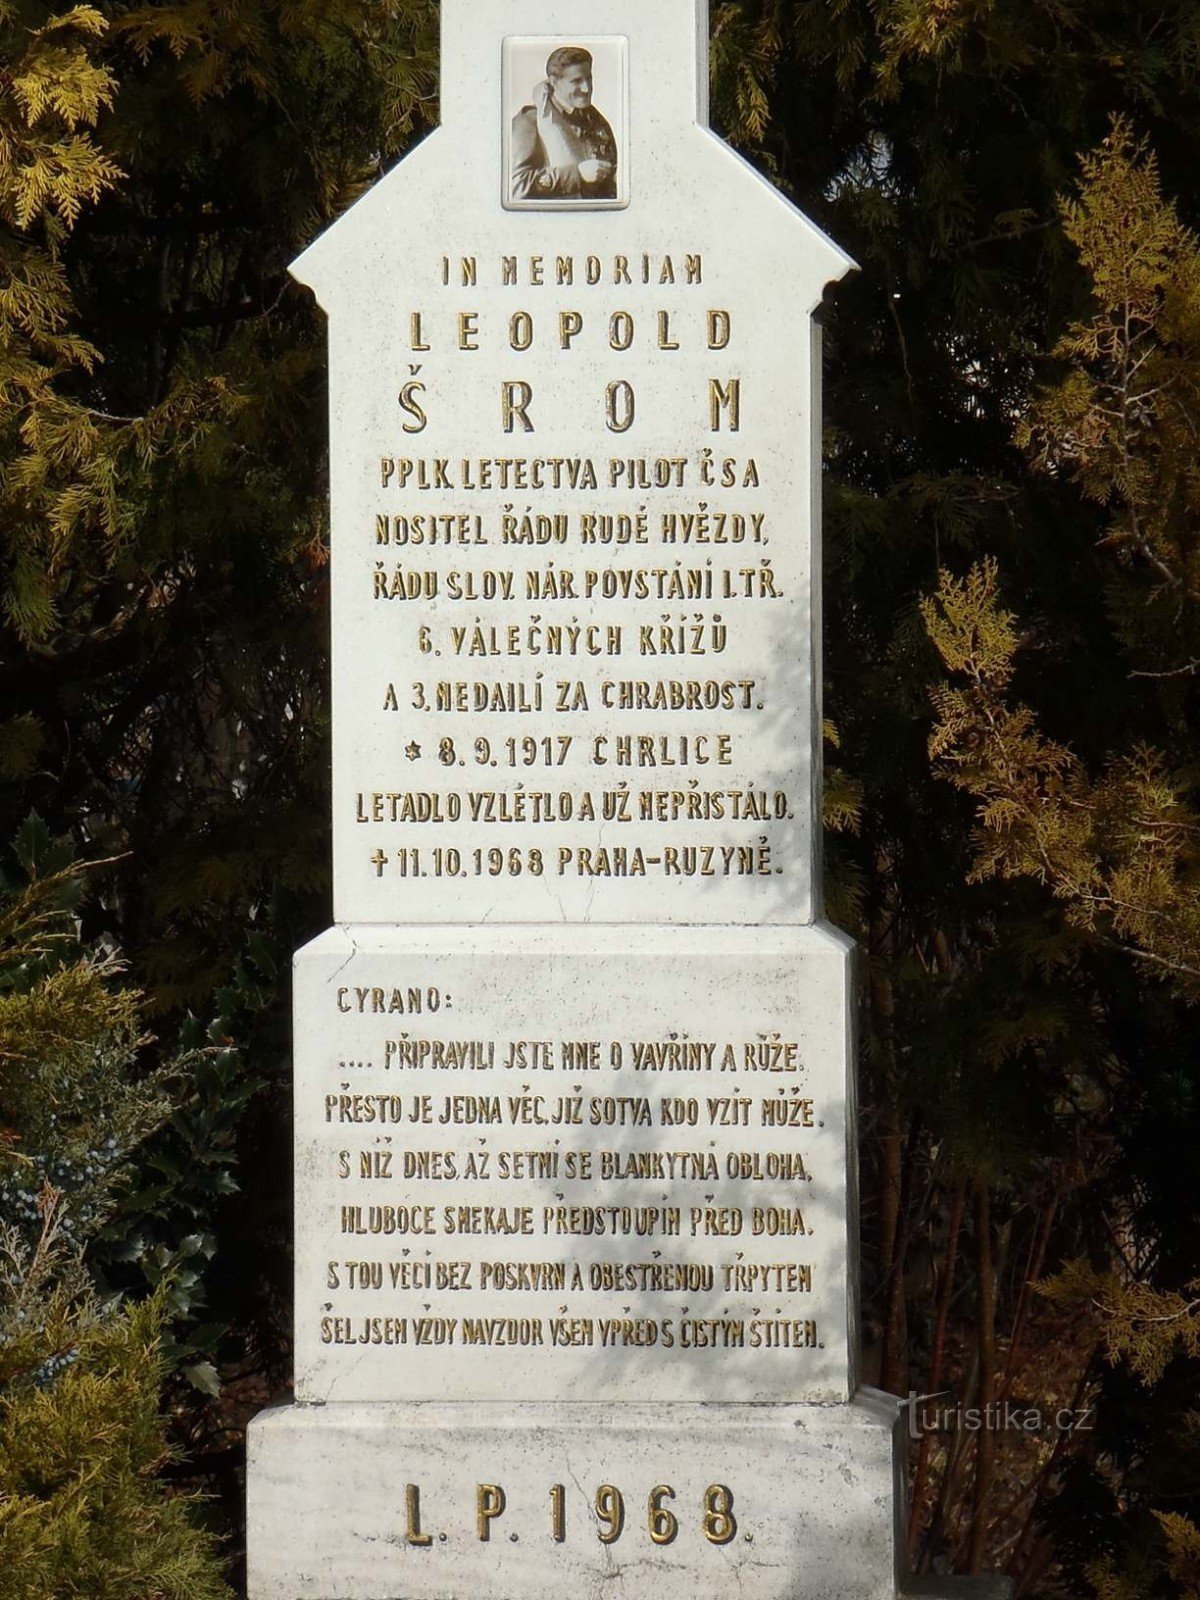 Monument to Leopold Šrom in Chrlice - 10.3.2012